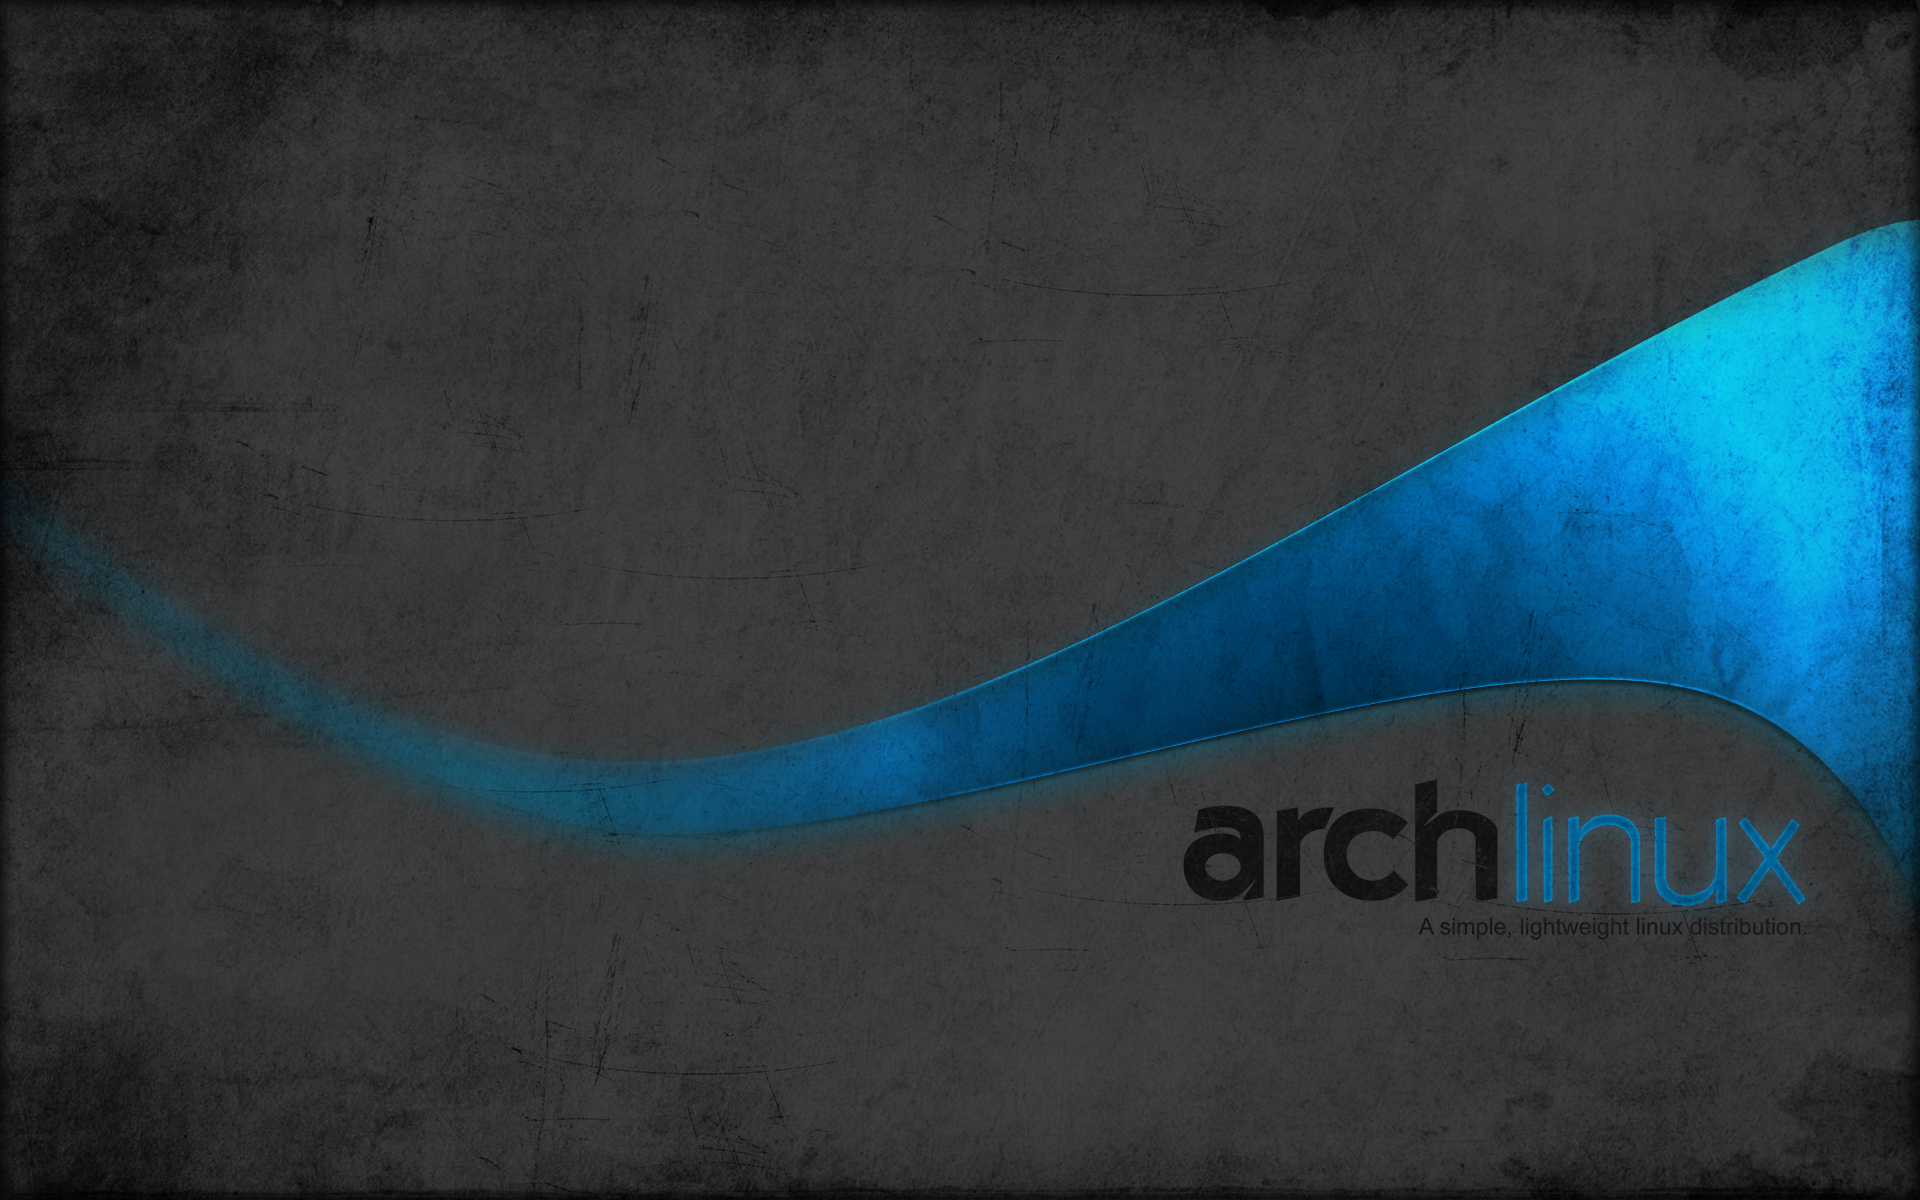 Linux, Arch Linux - desktop wallpaper